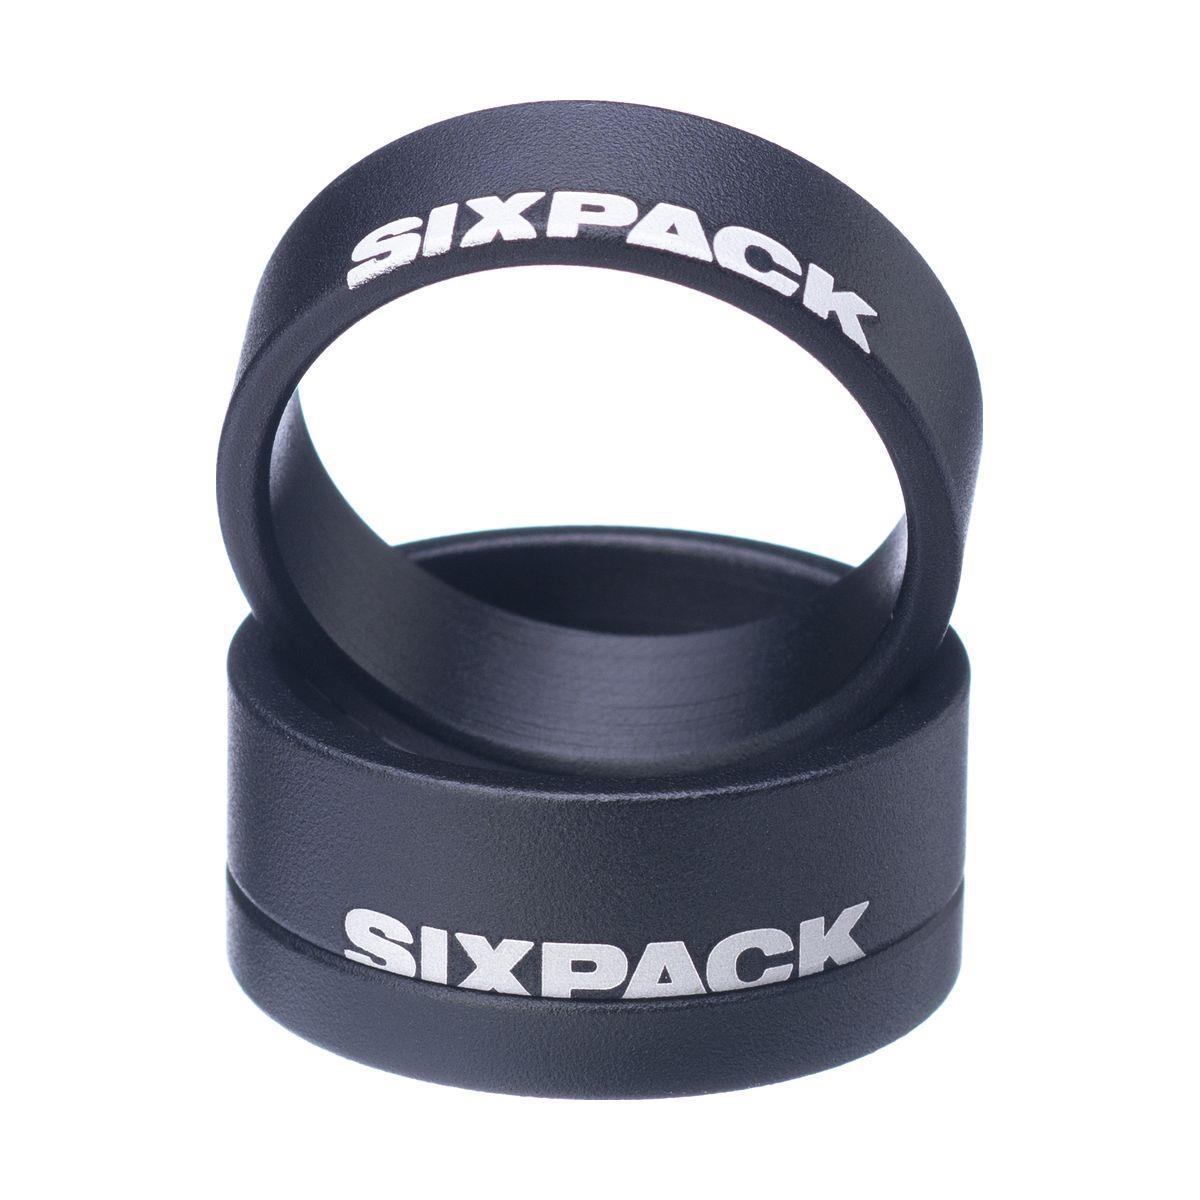 Spacer Sixpack 1-1/8: La herramienta esencial para lograr ajustes precisos y optimizar tu espacio en cuestión de segundos.